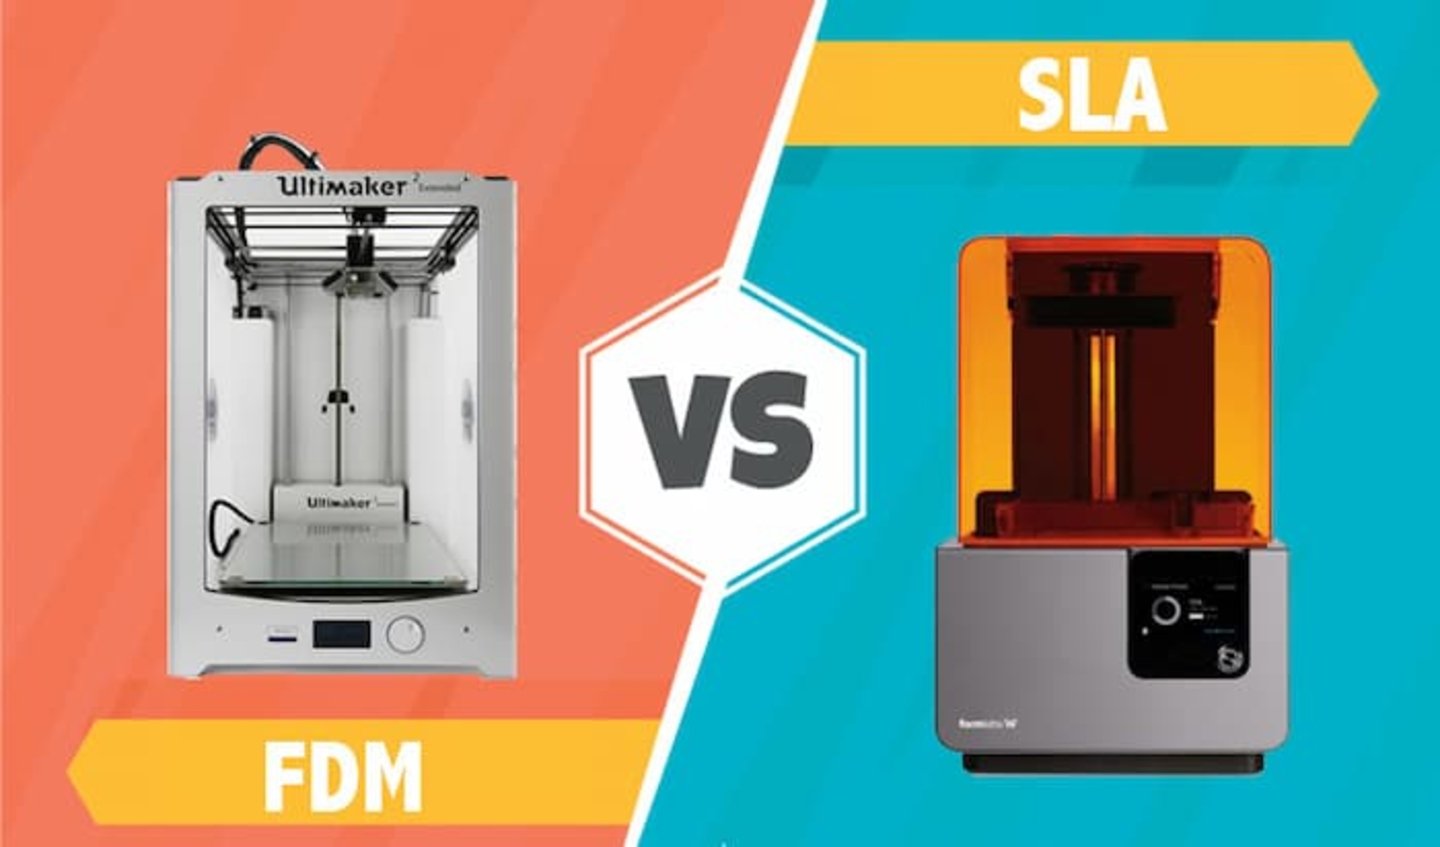 Estos son algunos de los tipos de impresora 3D más utilizados en la actualidad